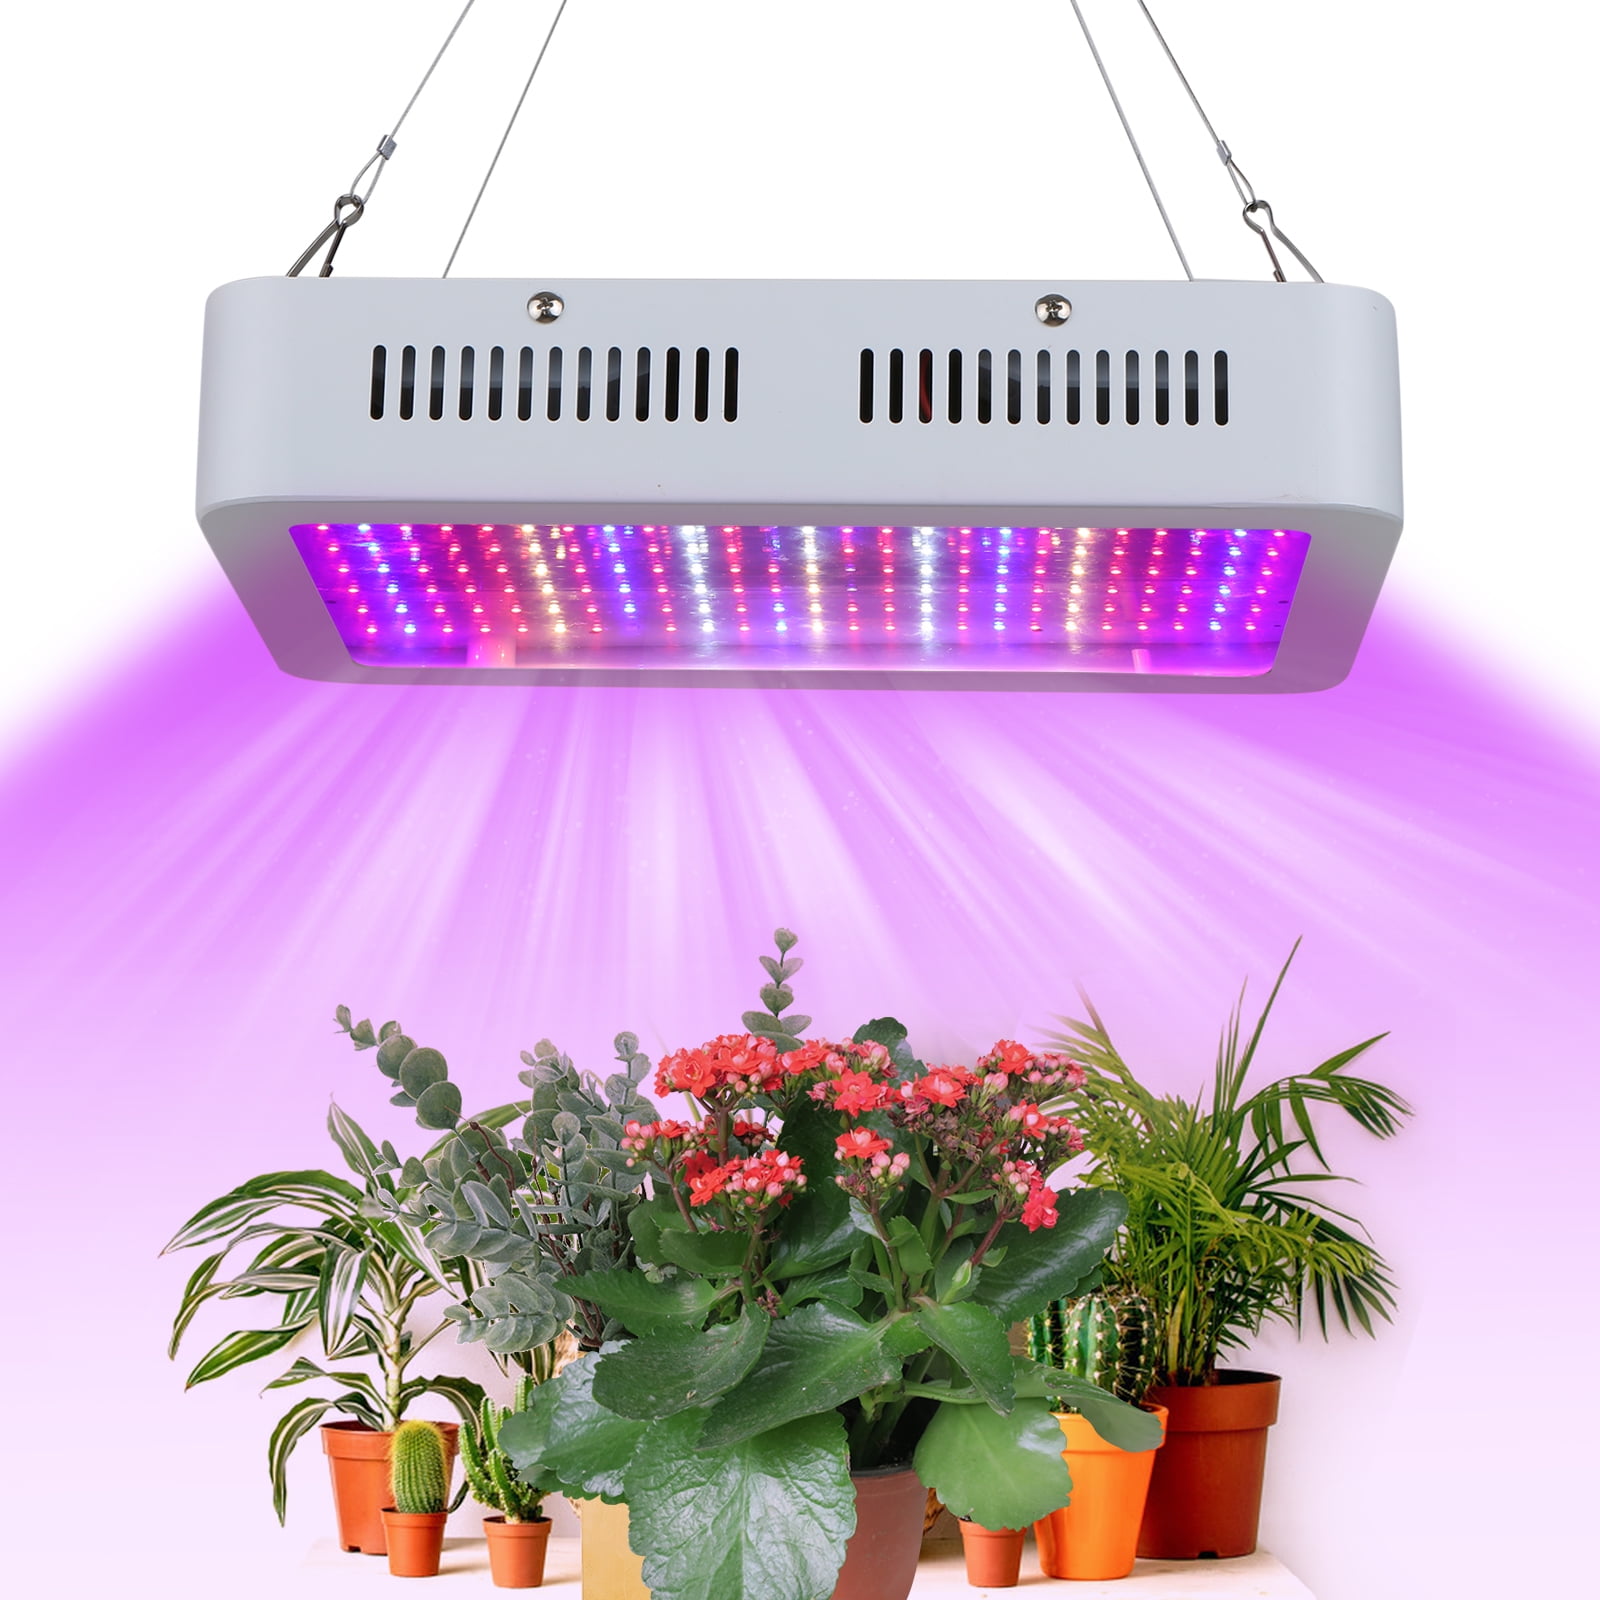 1800W Led Grow Light Kit Plant Light w/ 4' x 2' Hydroponic Grow Tent Grow Box 